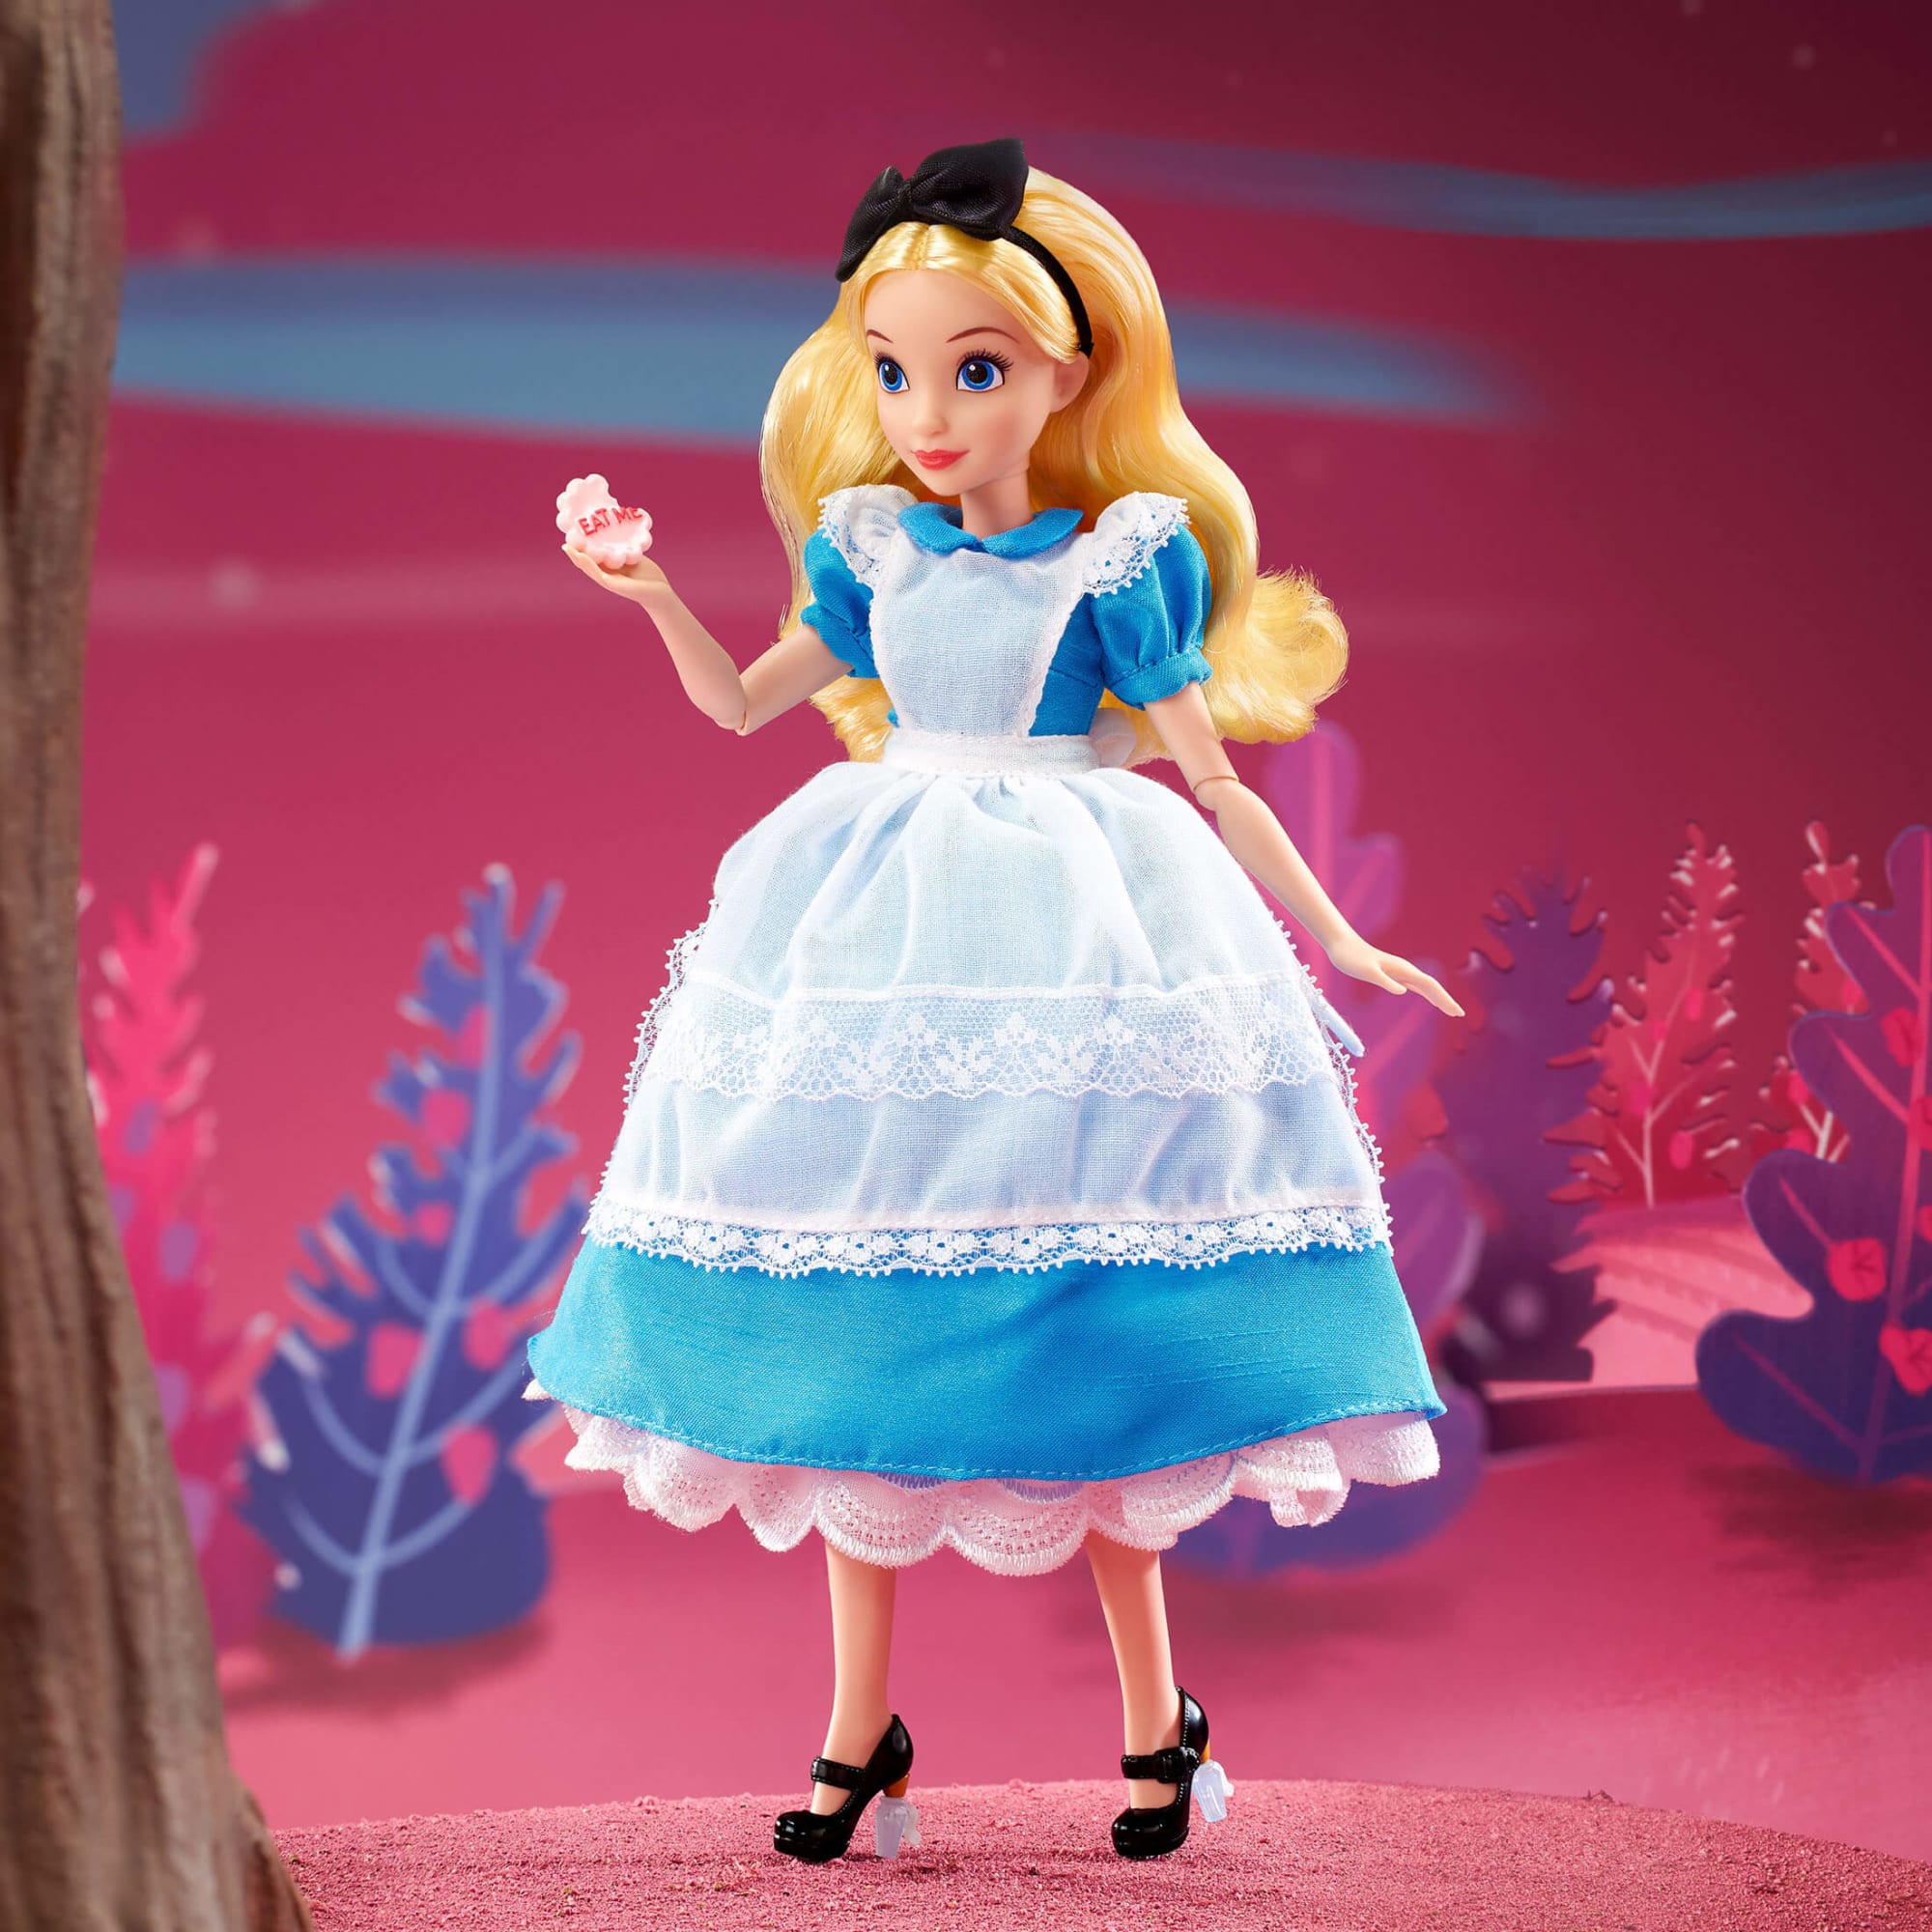 Barbie doll dressed as alice in wonderland